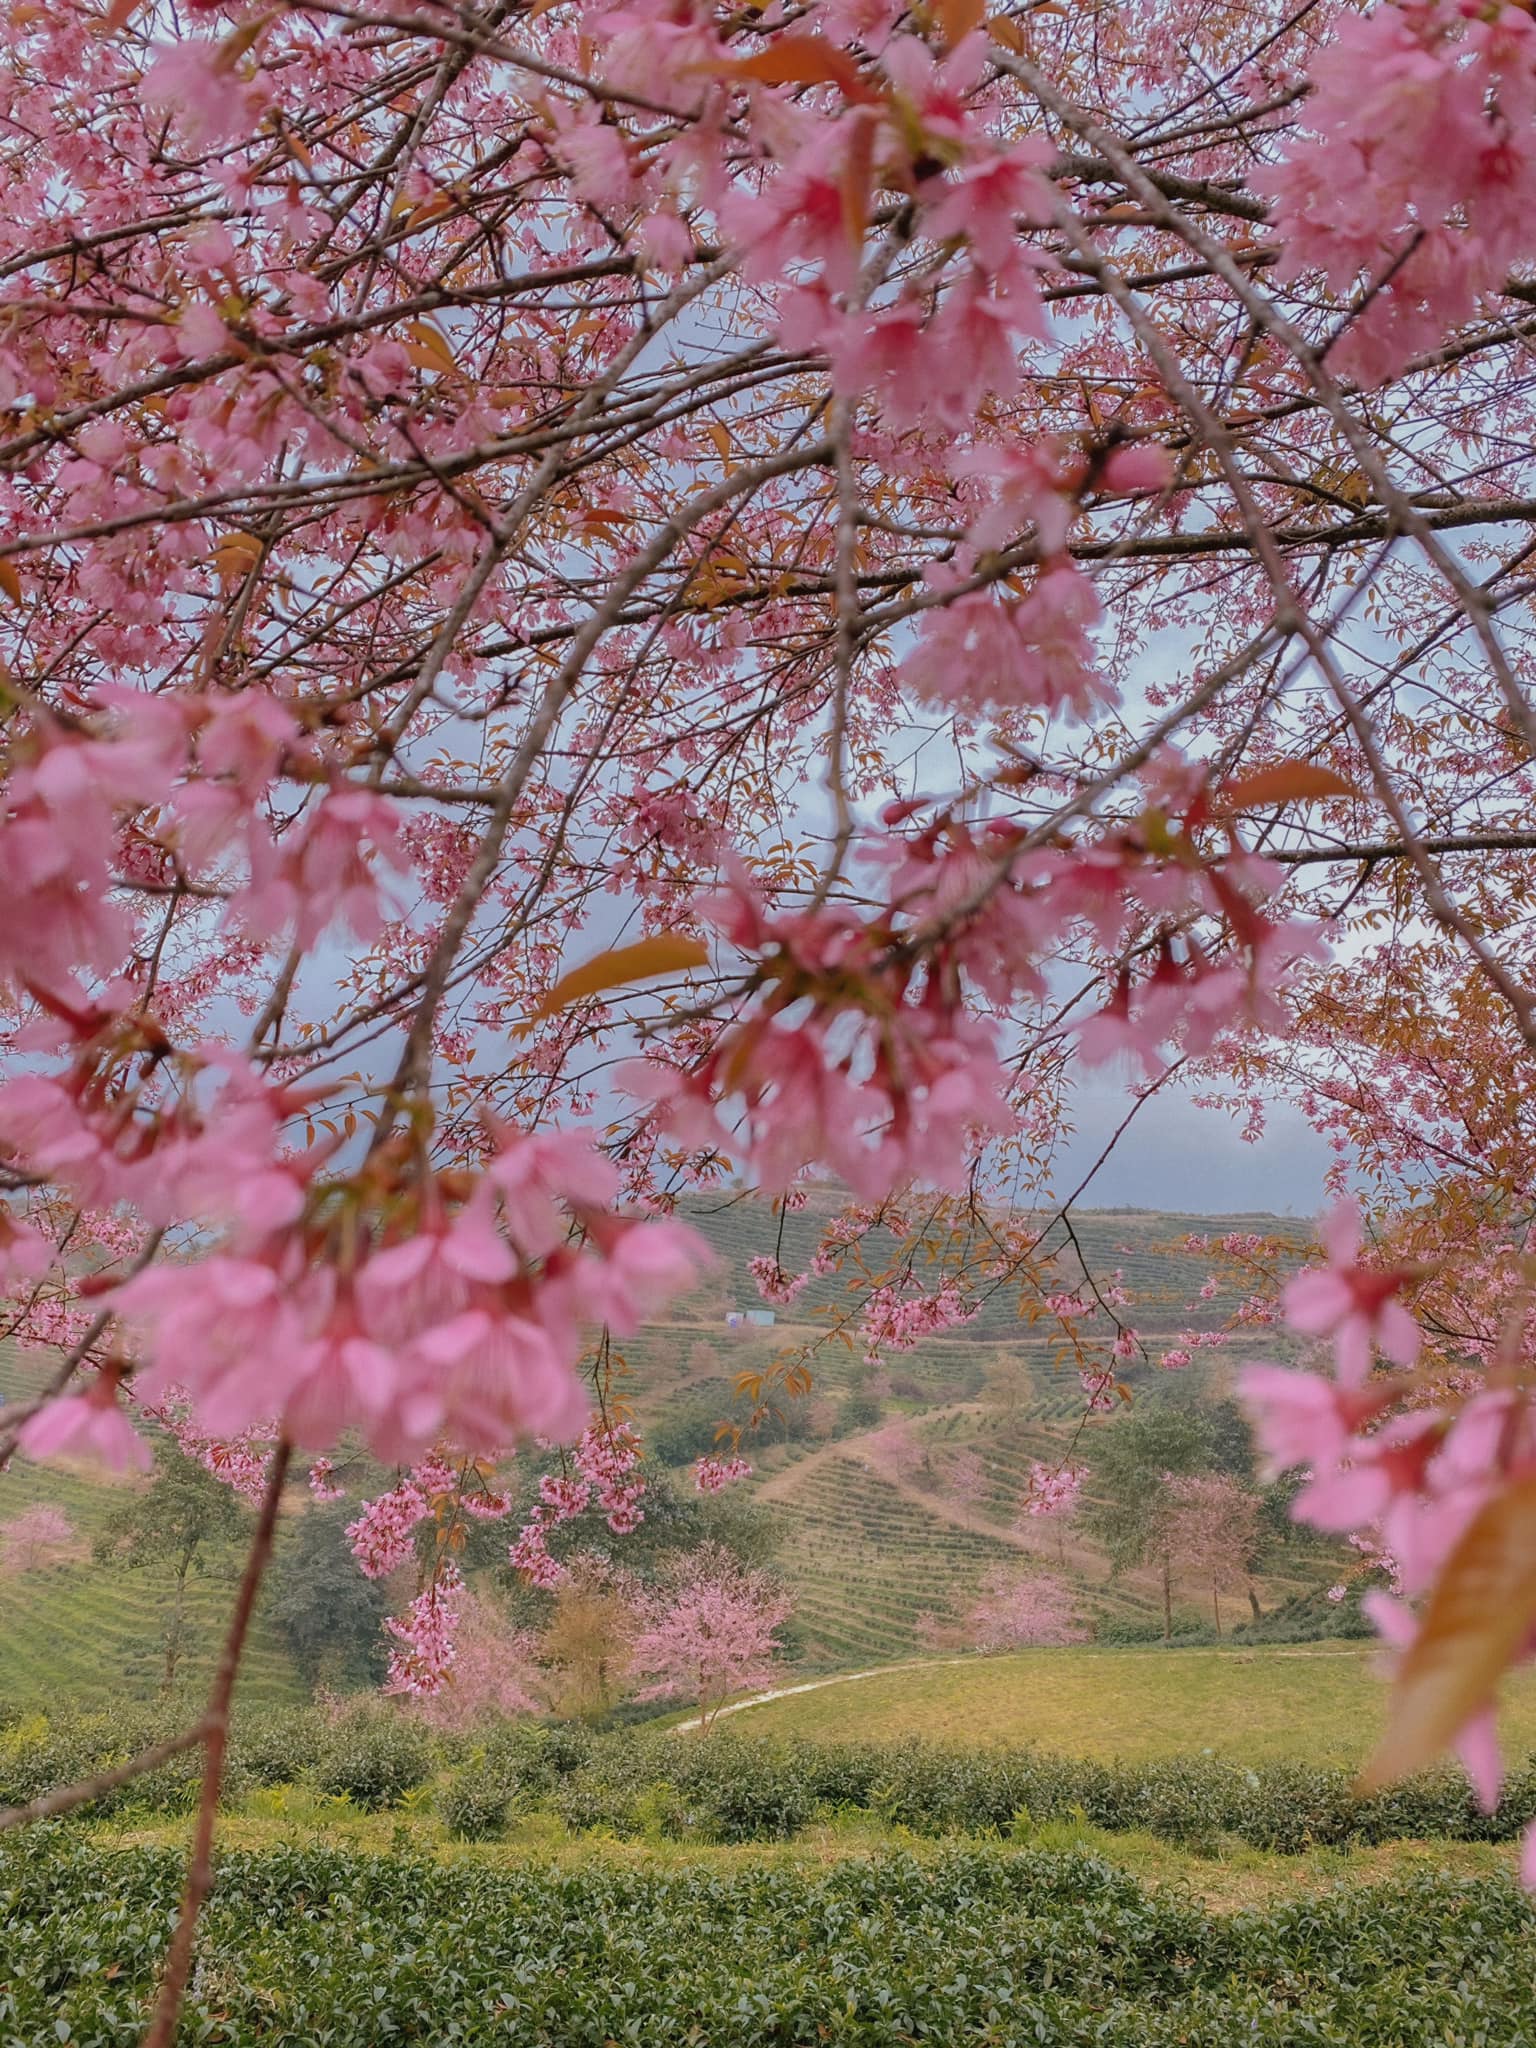 Du lịch Sa Pa mùa này để chiêm ngưỡng hoa mai anh đào nở đẹp như tiên cảnh